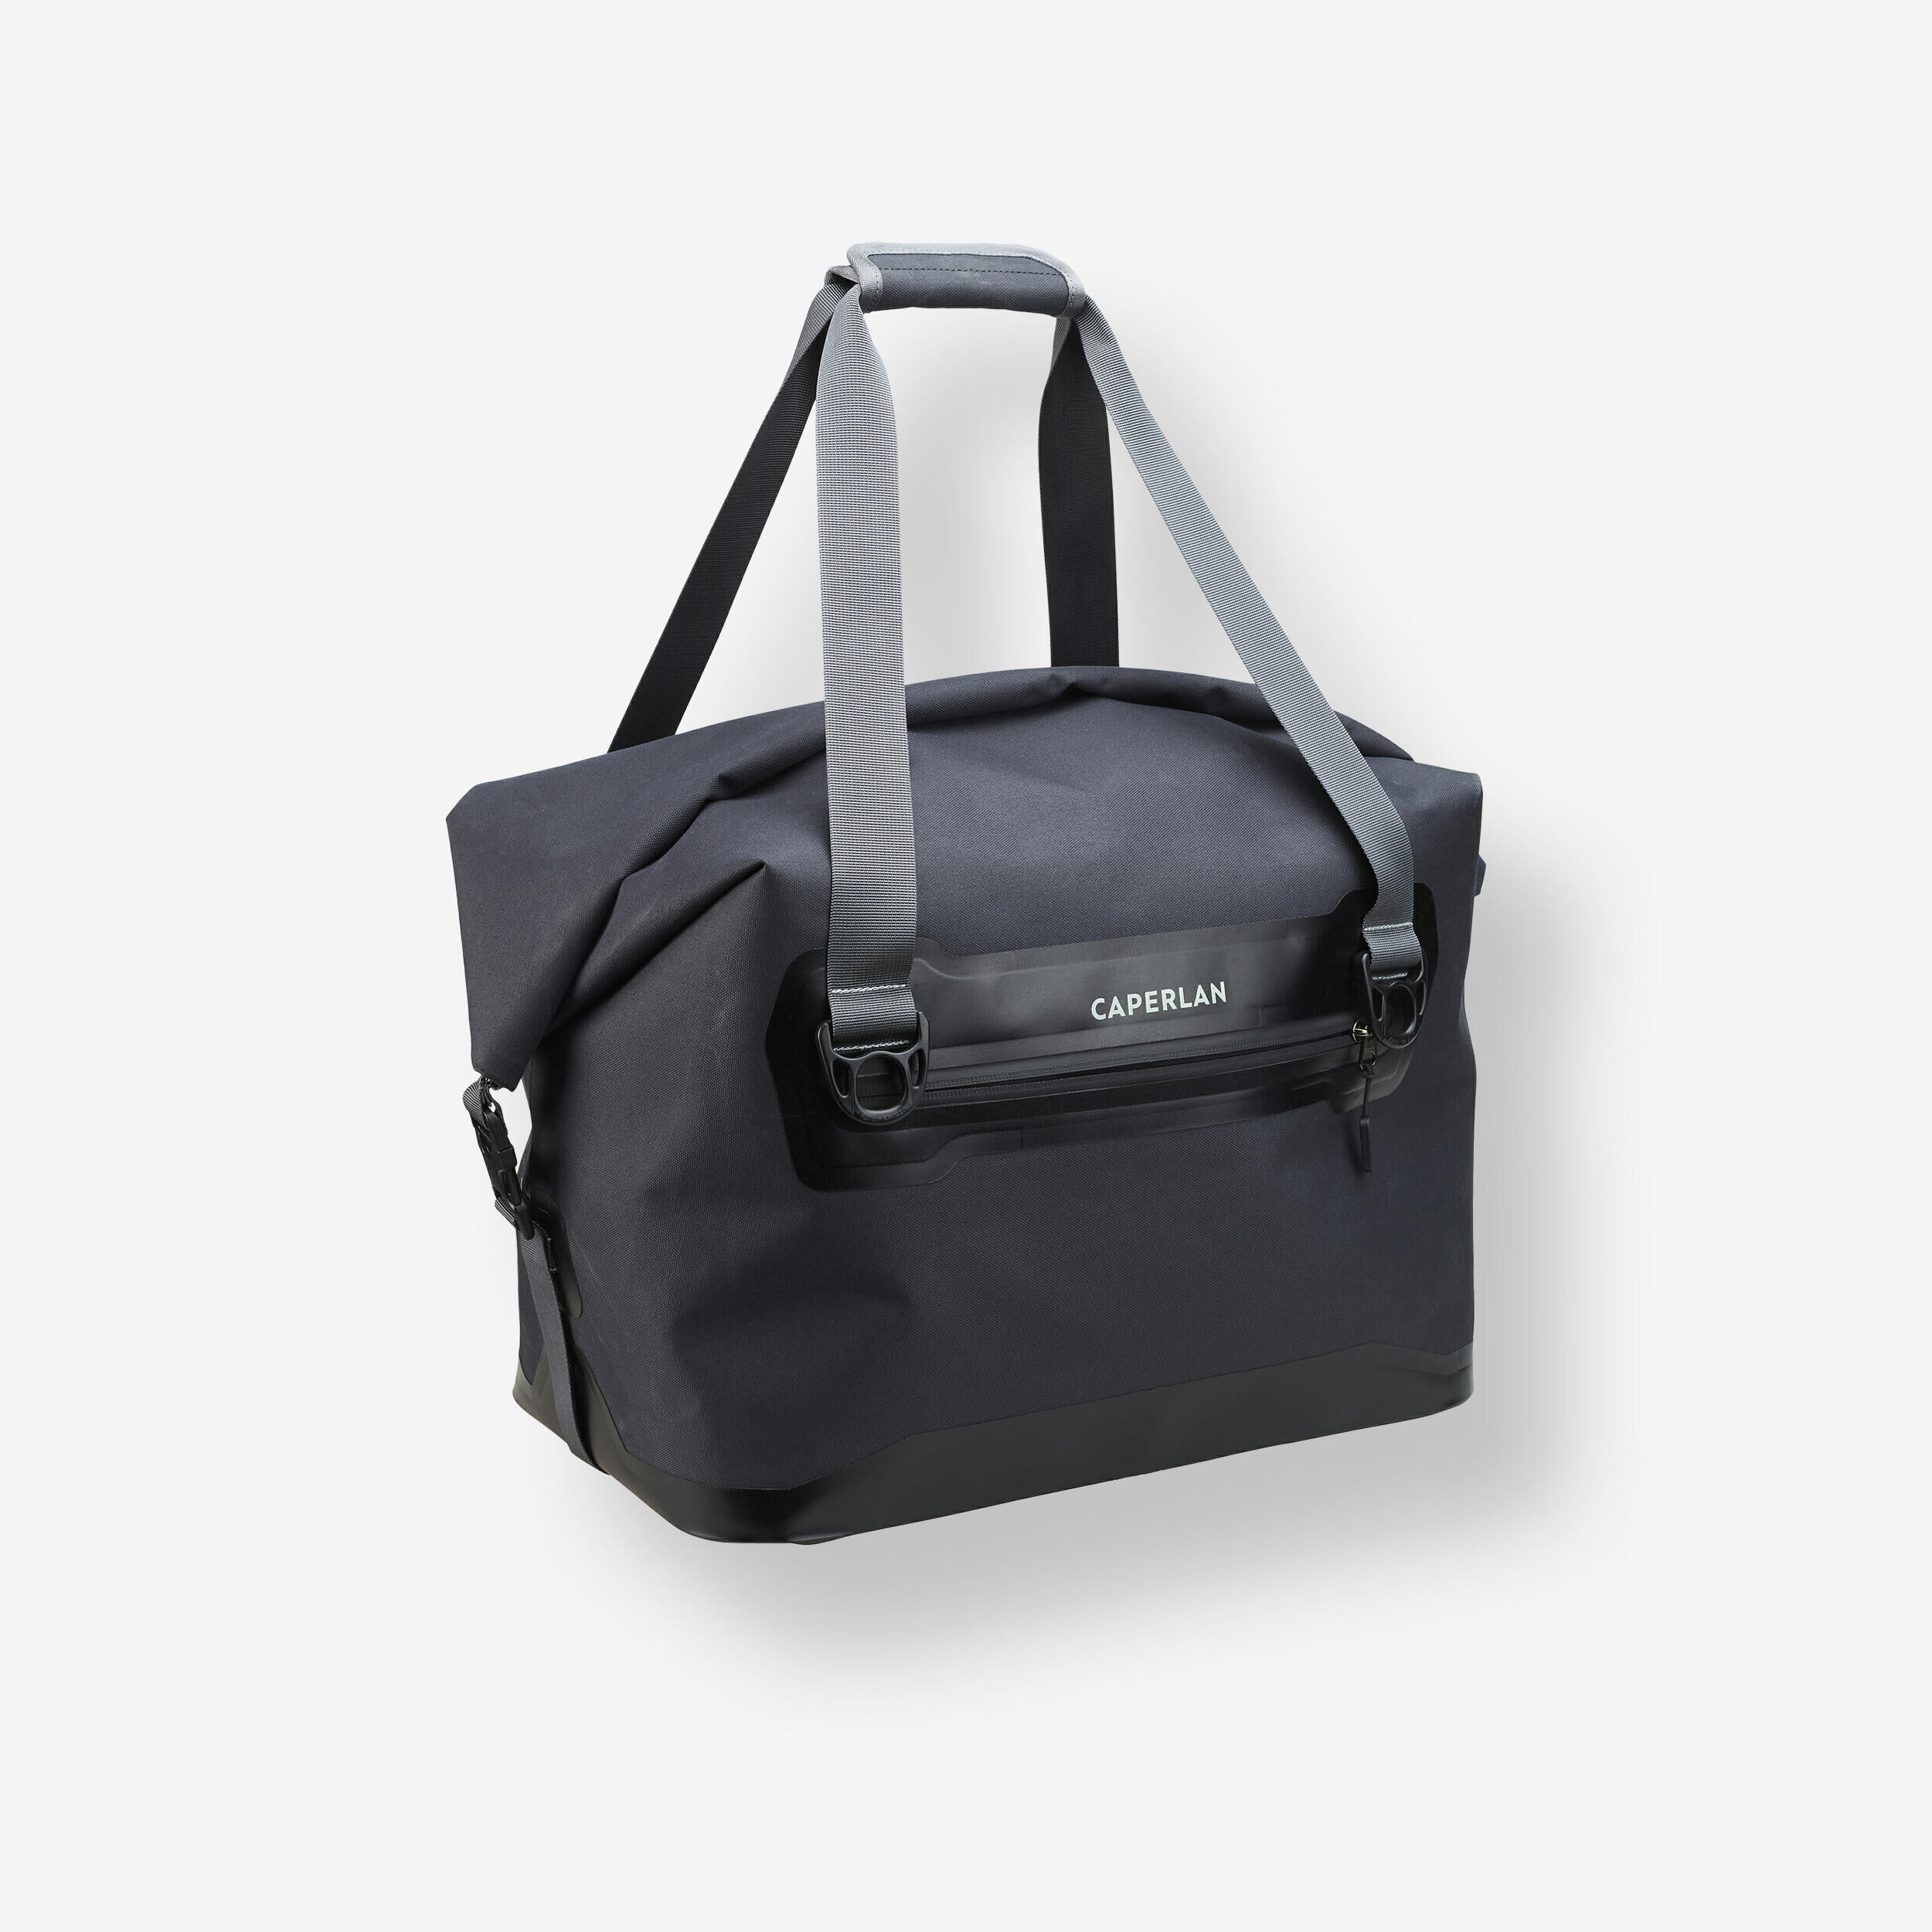 CAPERLAN Waterproof carryall bag 30 L